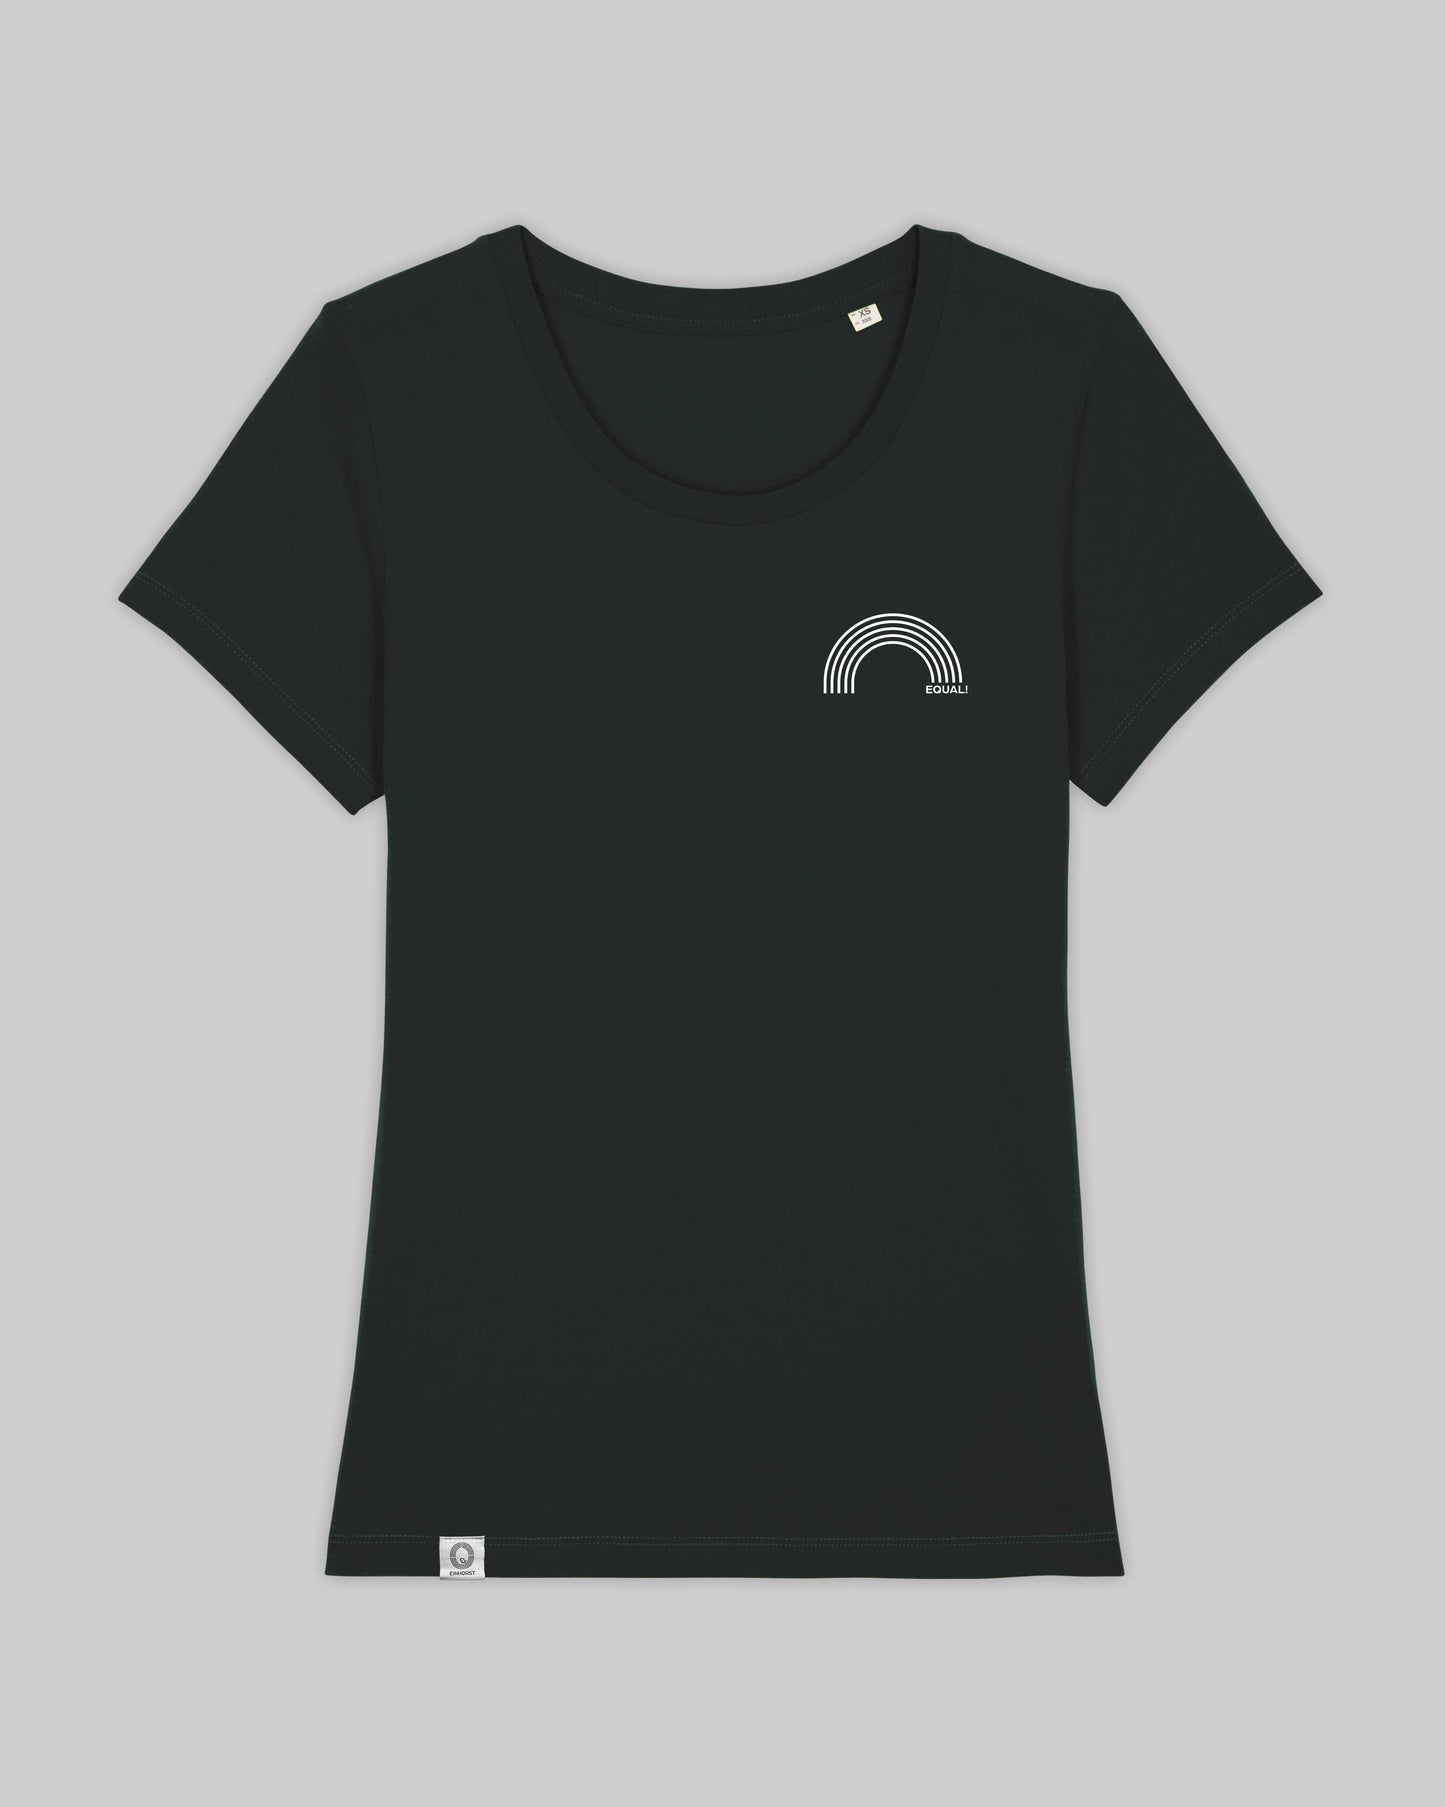 EINHORST® Organic Shirt tailliert in "Schwarz" mit dem Motiv "equal Regenbogen" in der Kombination weißer Regenbogen mit weißer Schrift, Bild von Shirt von vorne